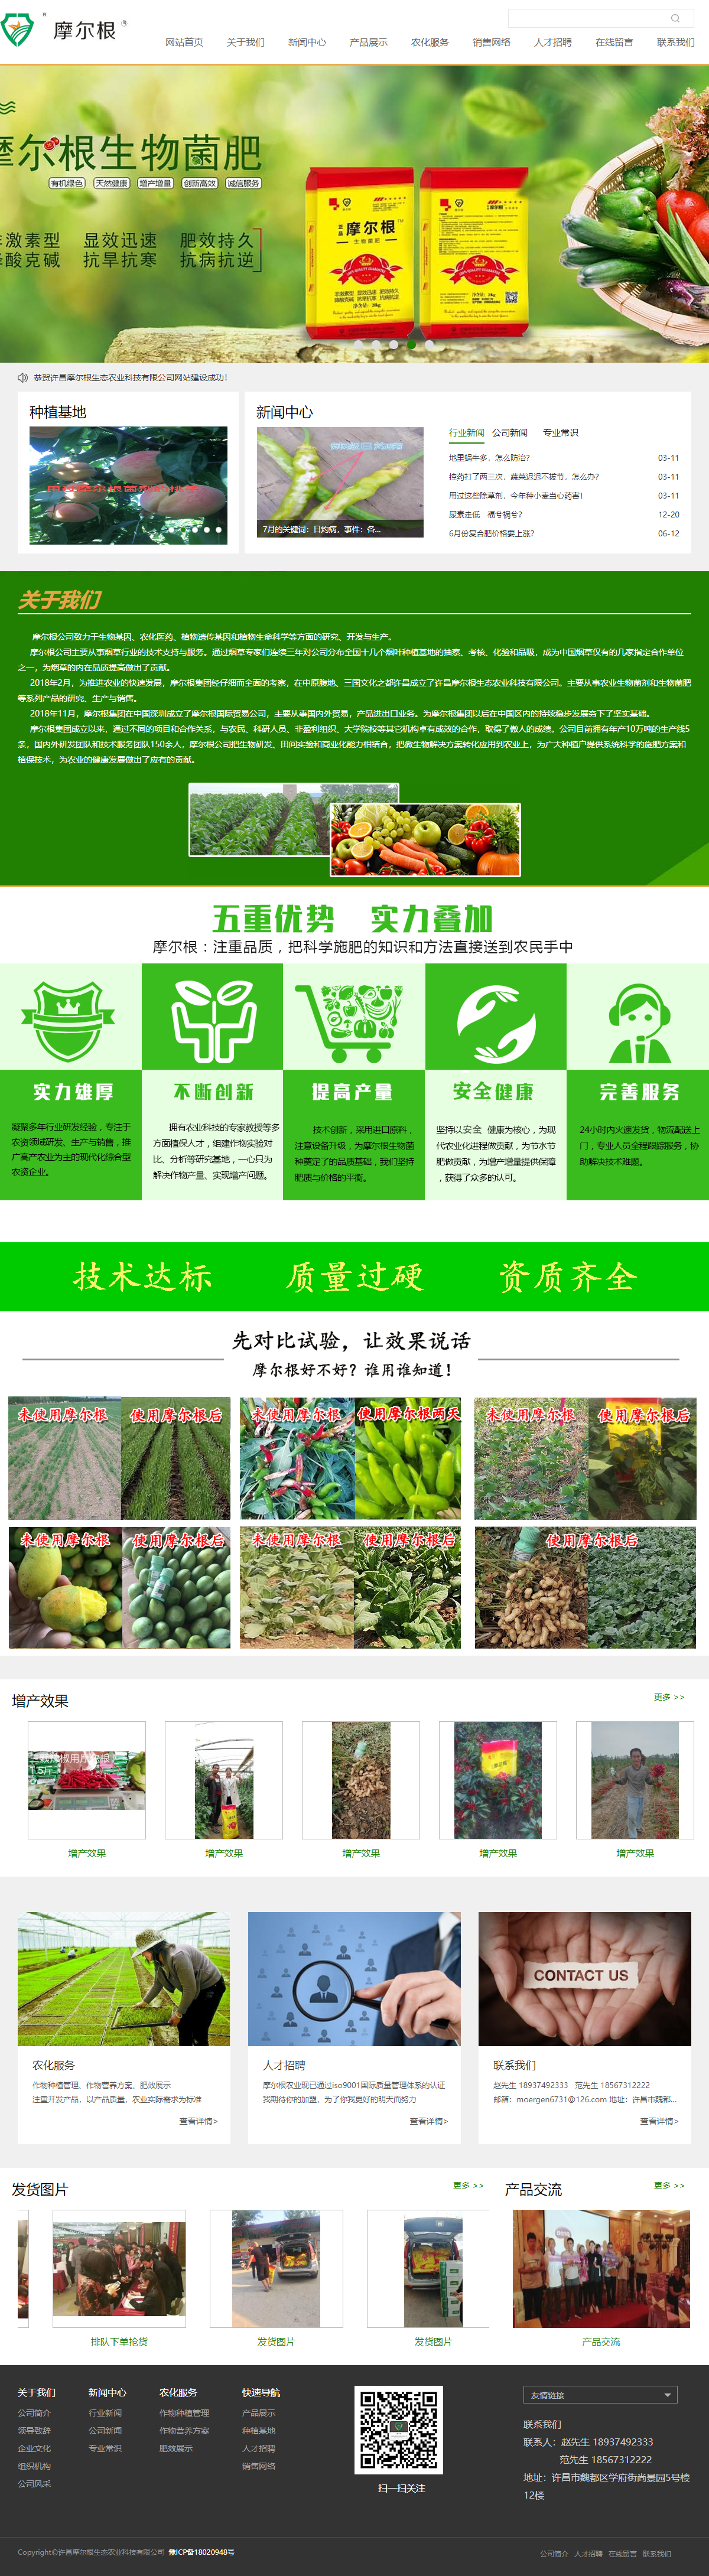 许昌摩尔根生态农业科技有限公司网站案例